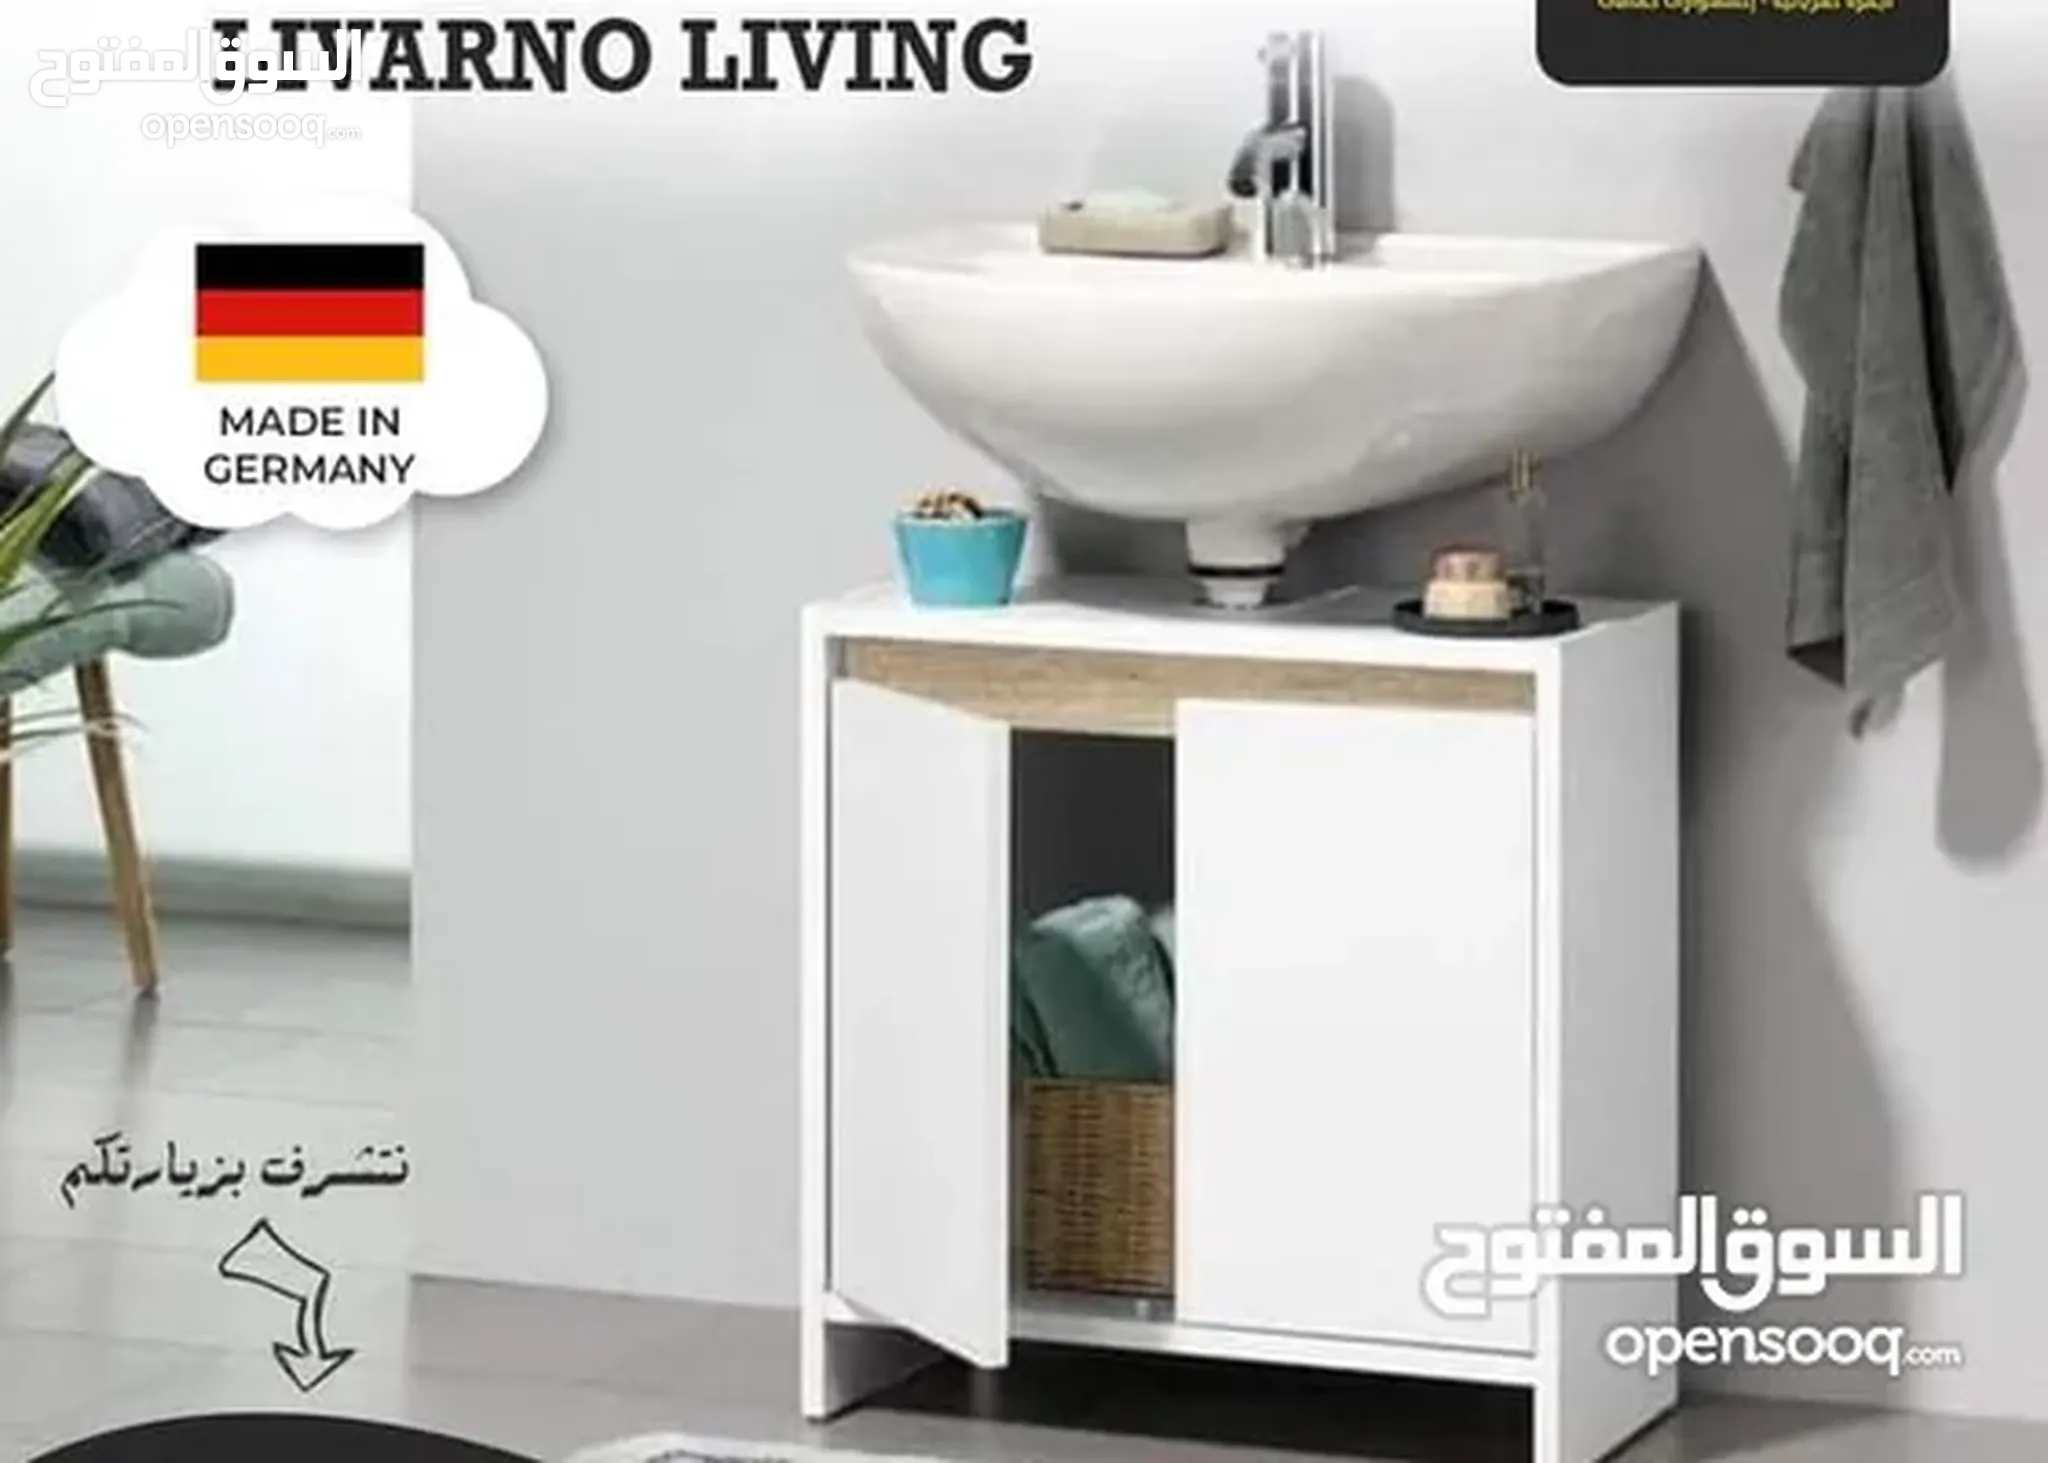 اكسسوارات حمامات للبيع في عمان : أطقم : شور بوكس : موديلات على السوق المفتوح